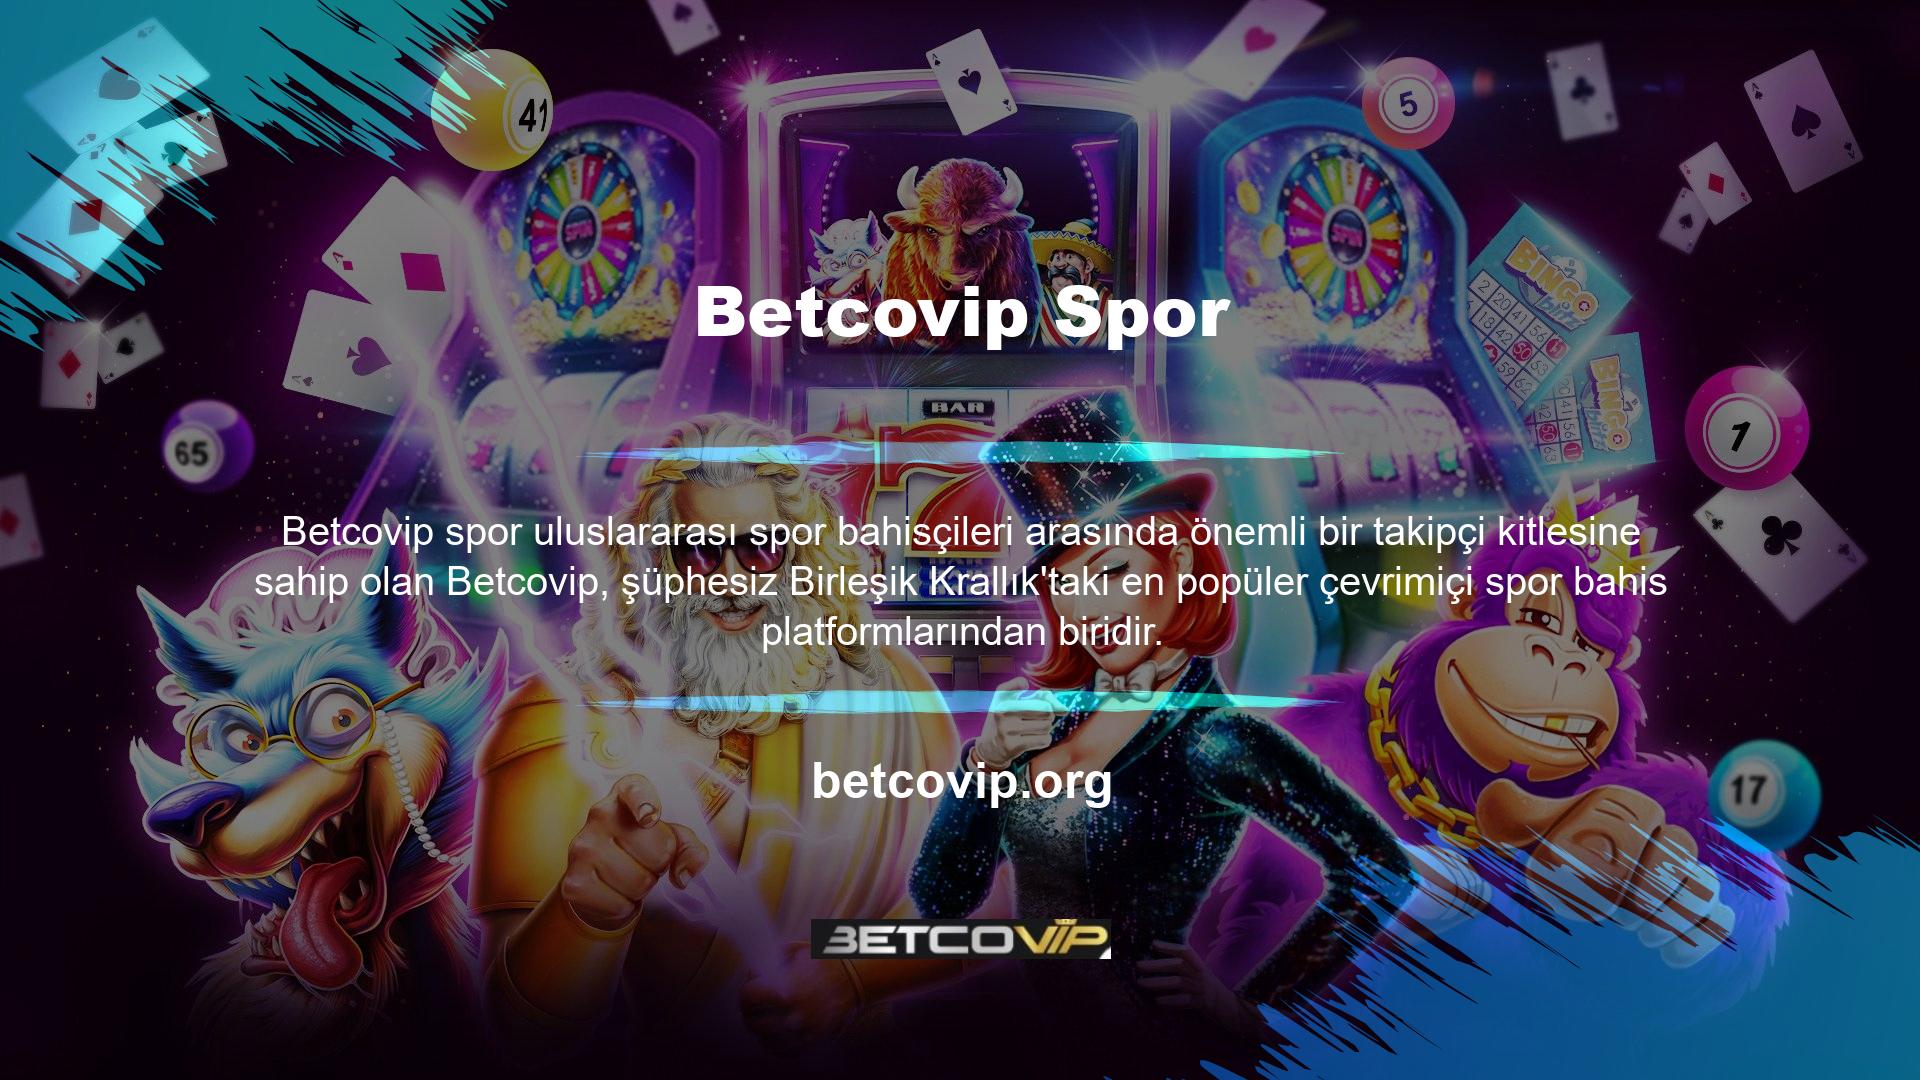 Betcovip, yeni altyapısıyla hem canlı bahis hem de casino hizmetleri sunan yasa dışı casino sitelerinden biridir